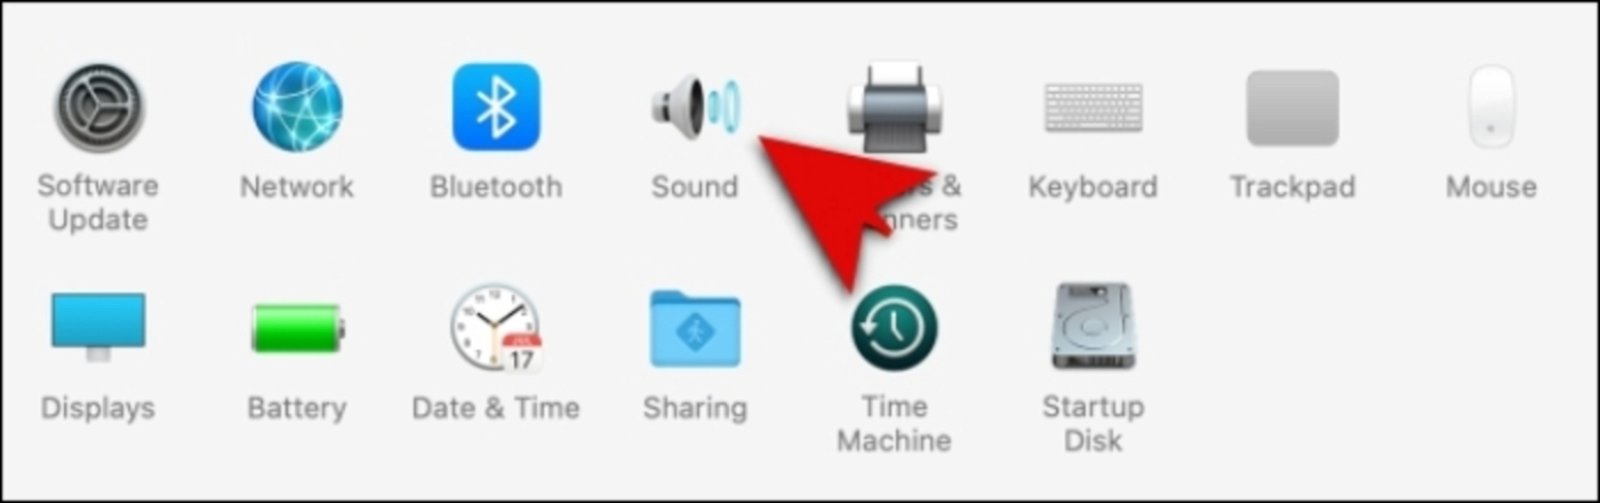 Cómo activar o desactivar el sonido al encender el Mac